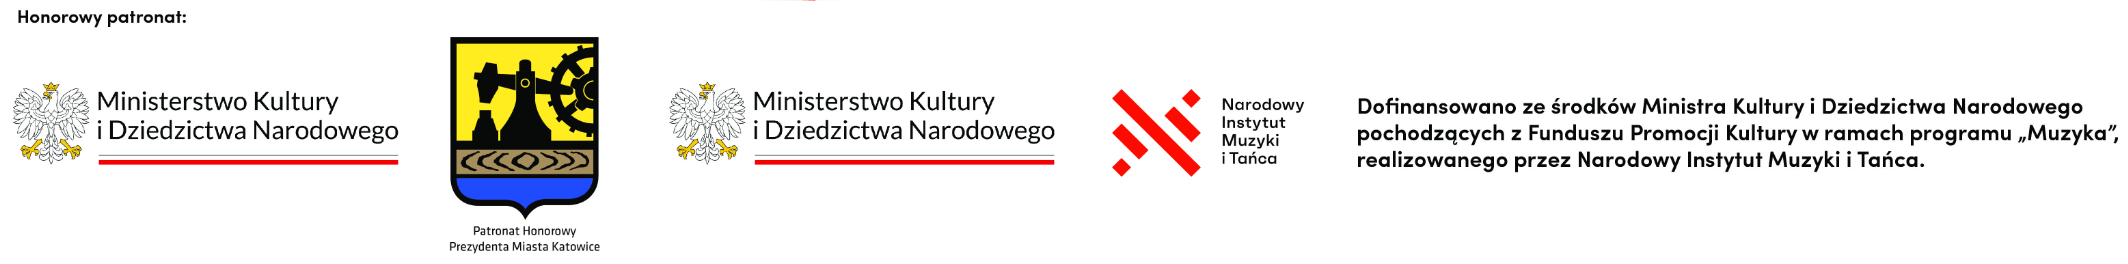 Patronat honorowy: MKiDN Prezydent Miasta Katowice  Dofinansowano ze środków Ministra Kultury i Dziedzictwa Narodowego pochodzących z Funduszu Promocji Kultury w ramach programu „Muzyka”, realizowanego przez Narodowy Instytut Muzyki i Tańca. 